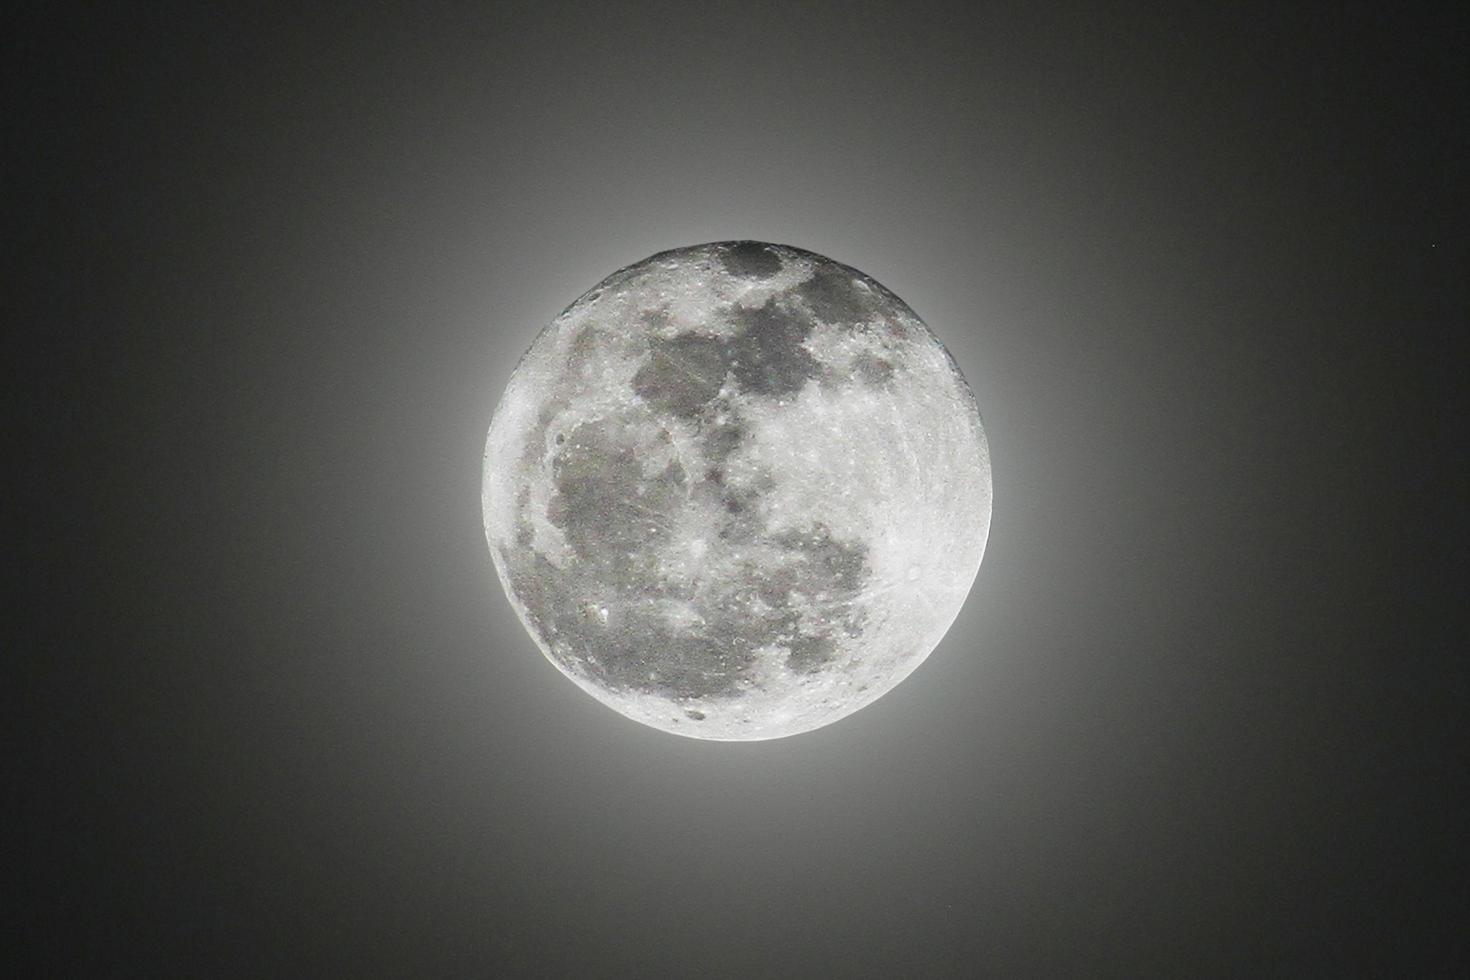 makt ljus av full supermåne i mörk svart natt och visa textur utrymme av månens yta. foto